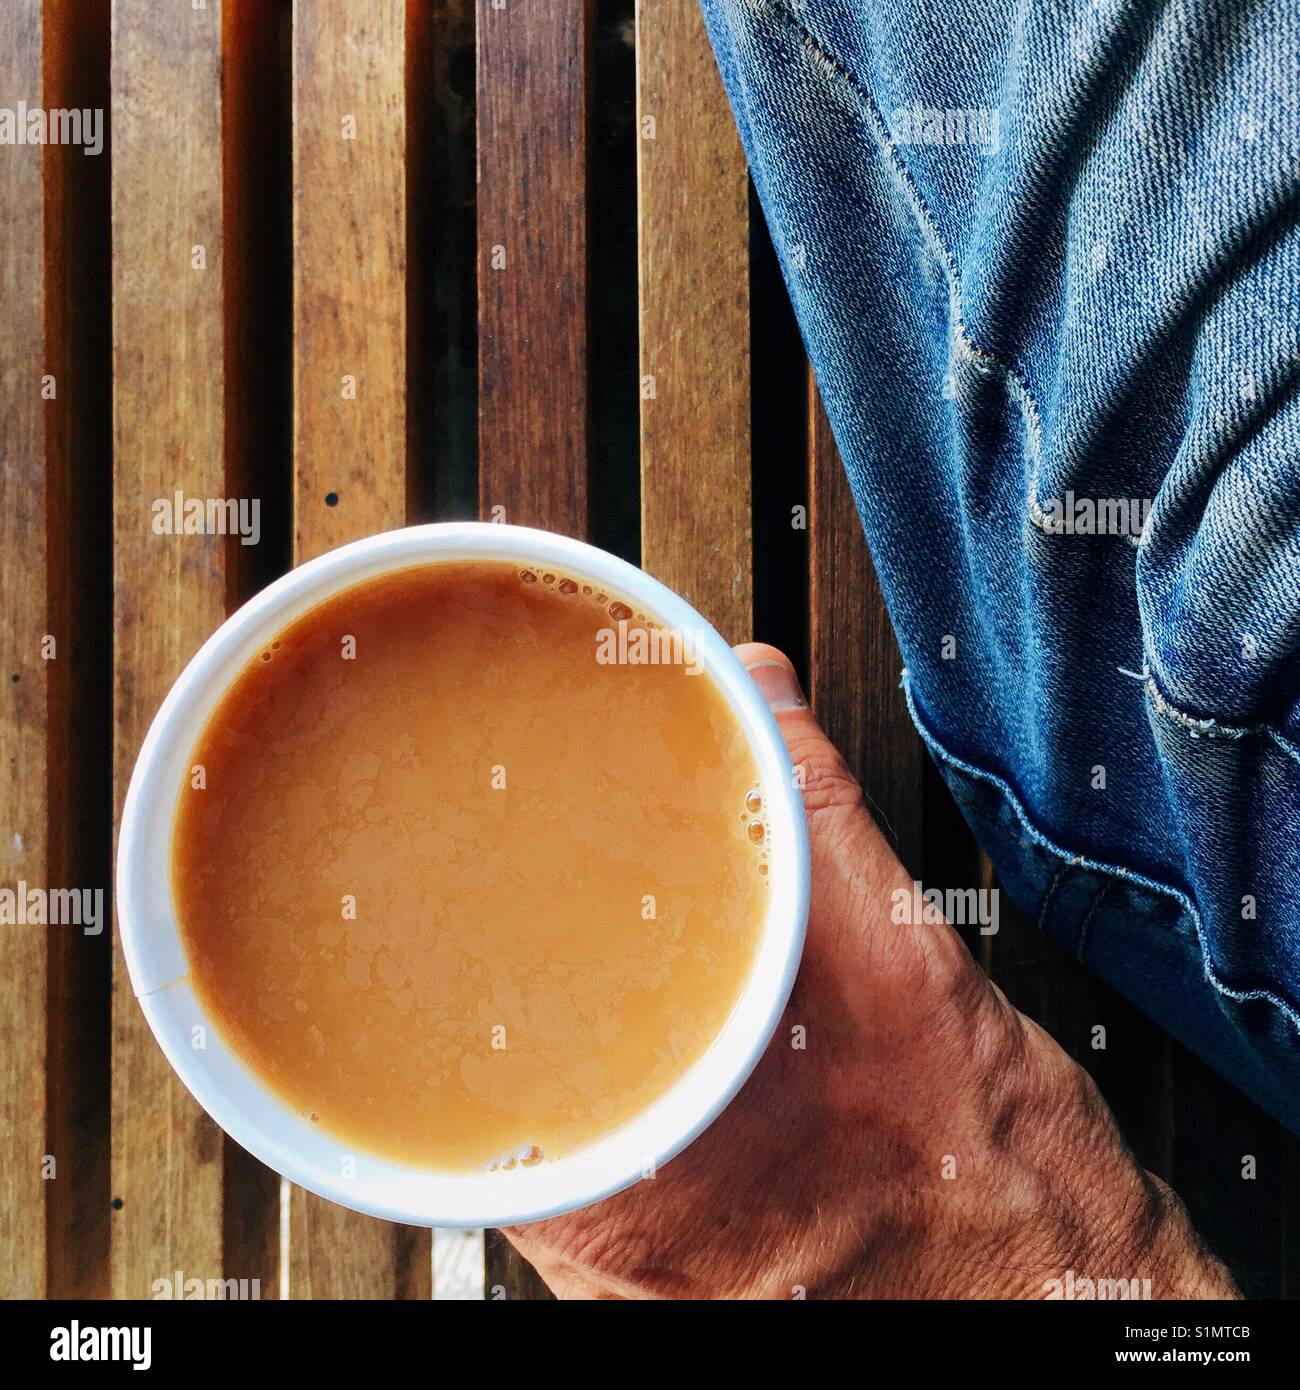 Una sobrecarga detalle shot de un hombre en jeans sosteniendo una taza de café recién hecho en una taza de papel Foto de stock